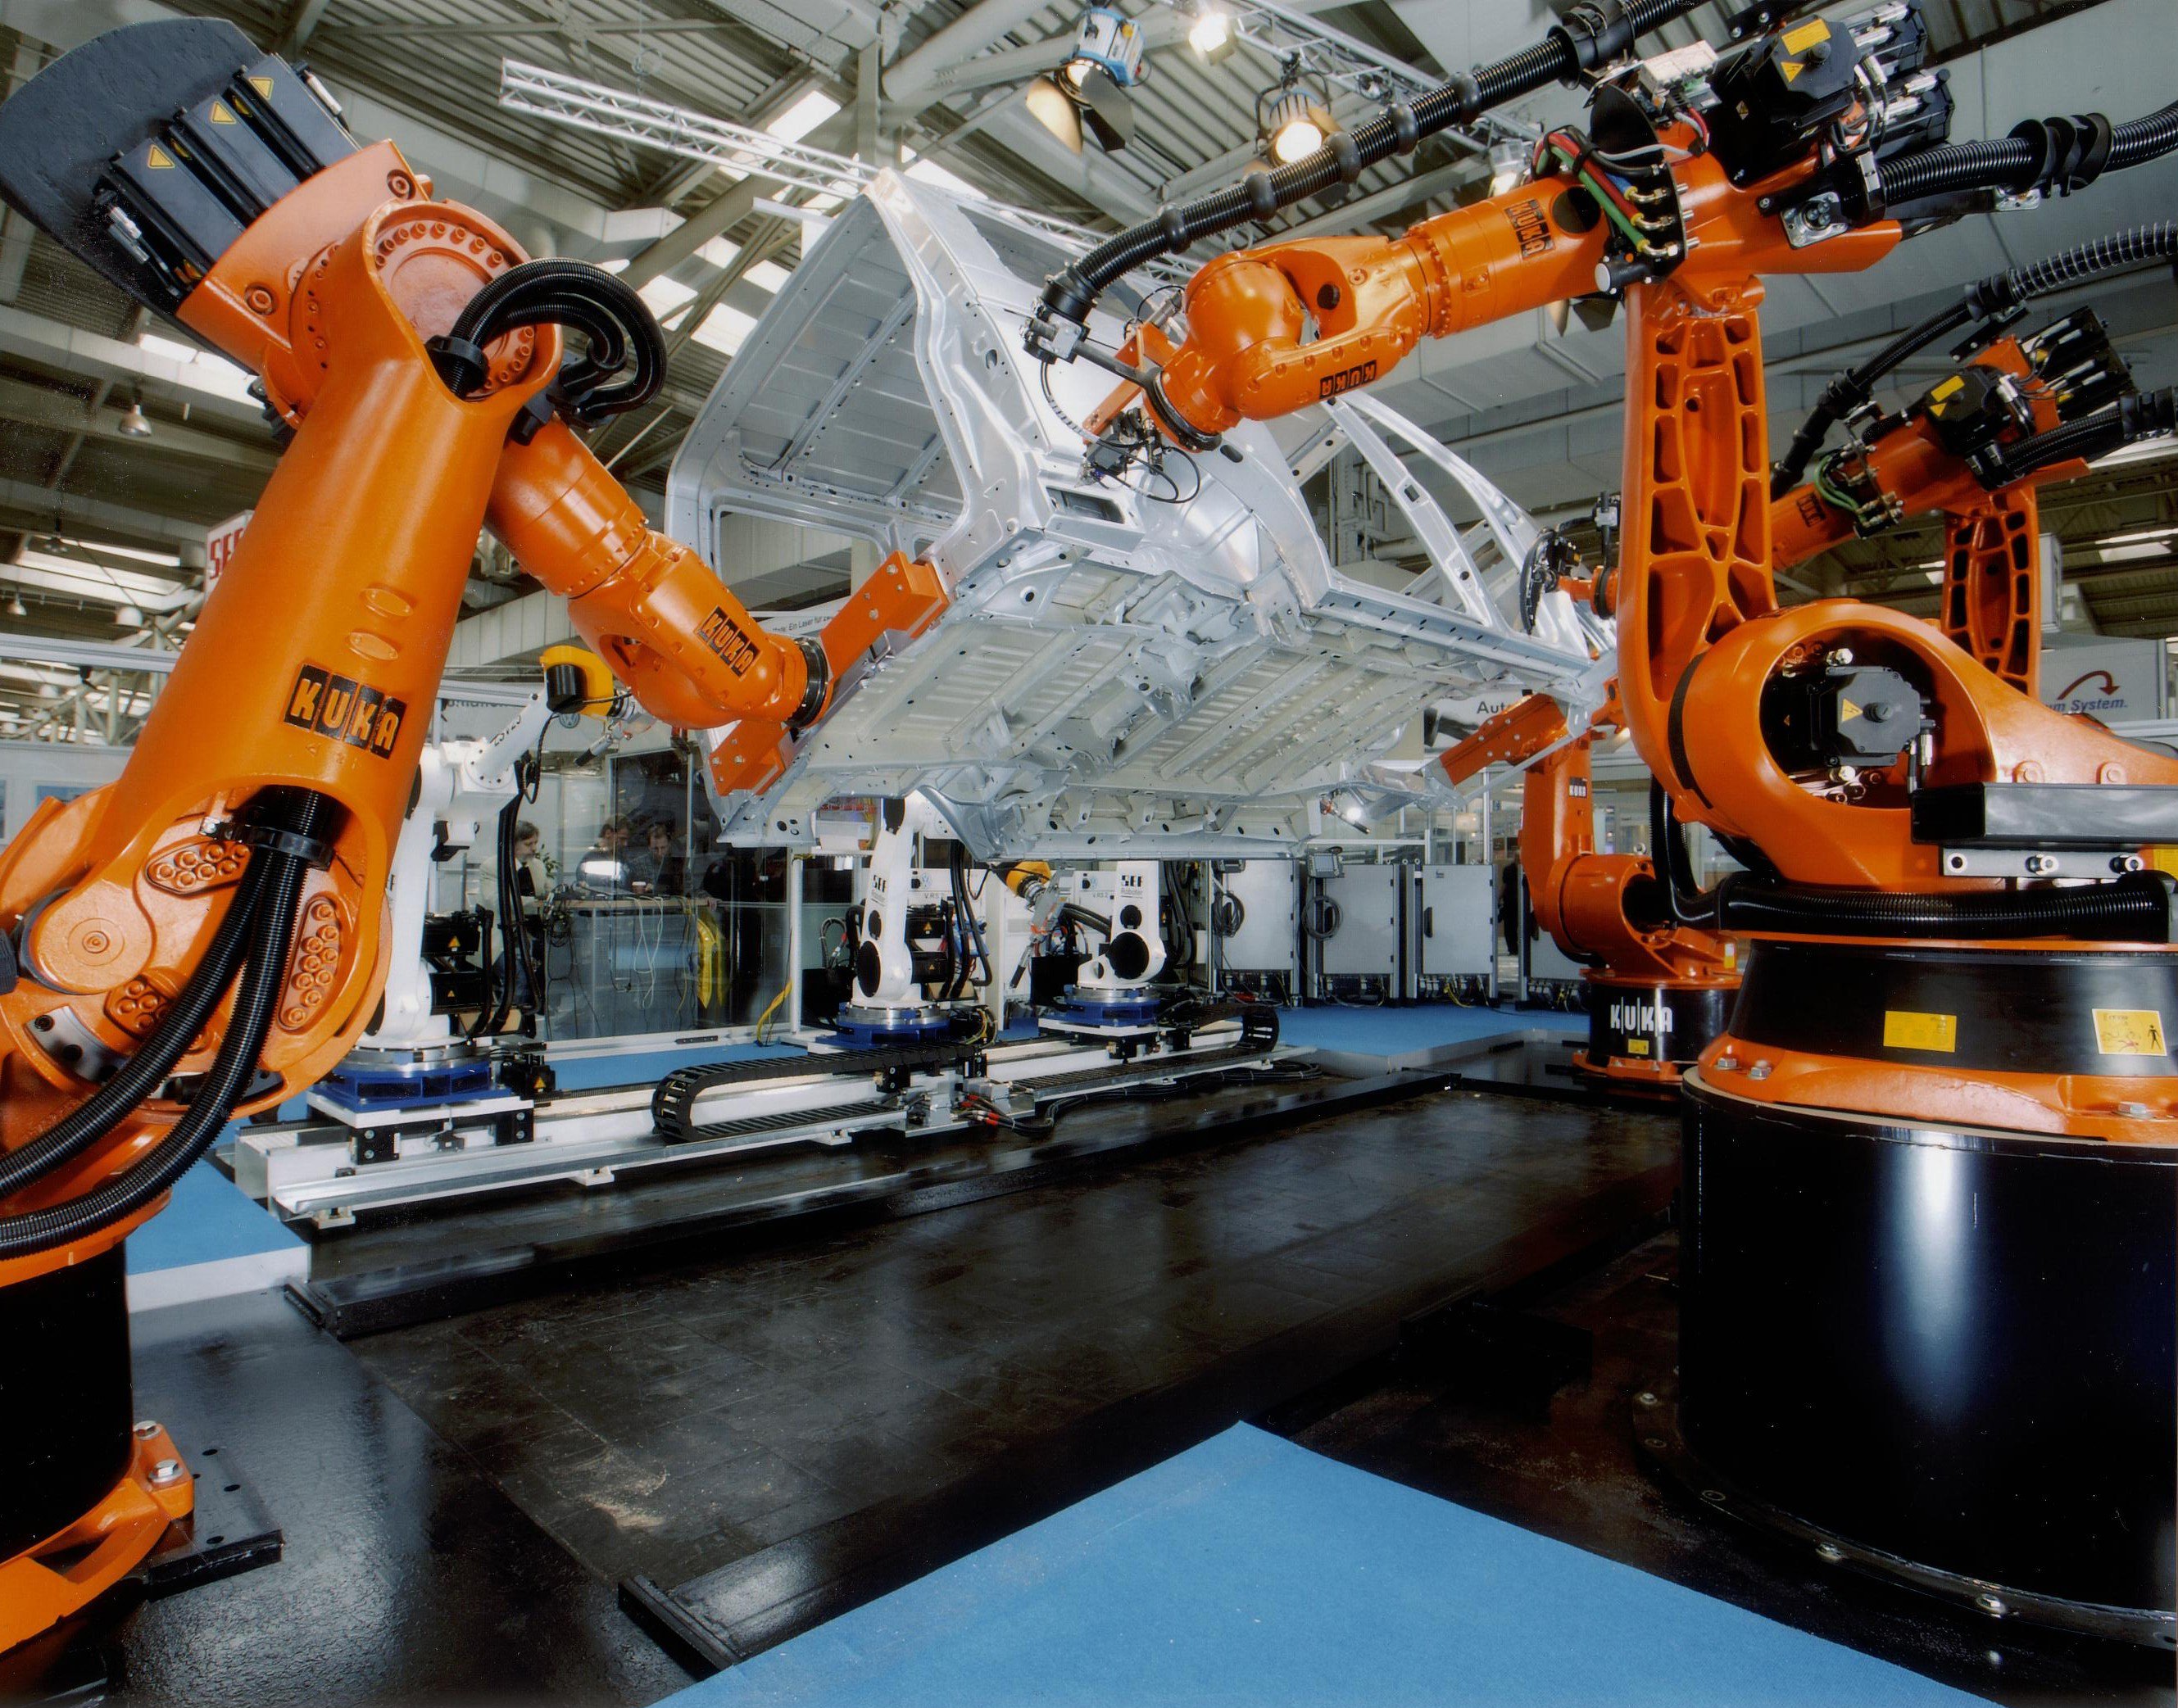 Виды промышленных роботов их назначение. Kuka завод. Завод фабрика kuka в Германии. Промышленный робот kr 1000 Titan. Механизация и автоматизация производства.